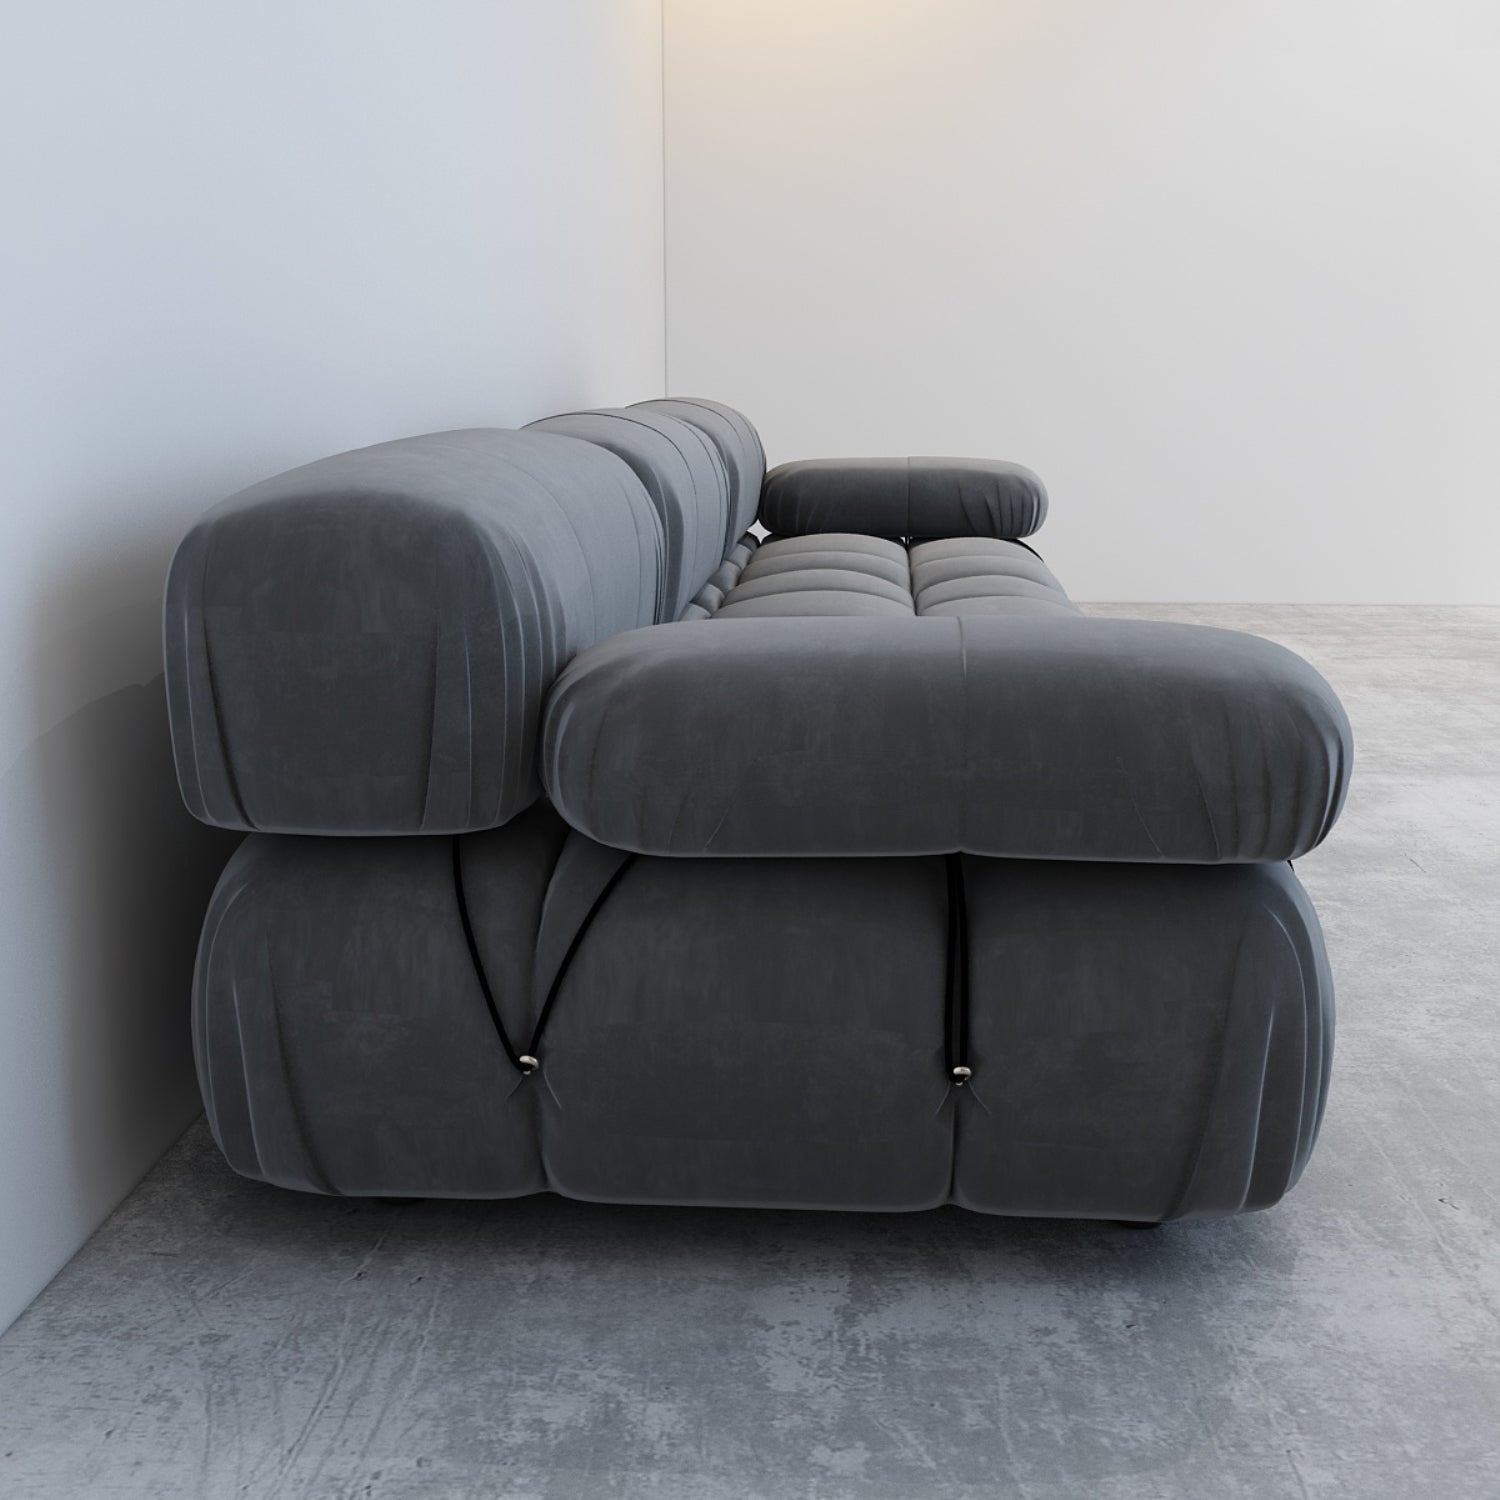 JANNAHSTUDIOS CAMILLE Modular [Mario Bellini] Designer Inspired Camaleonda Sofa (3-Seater Sofa)